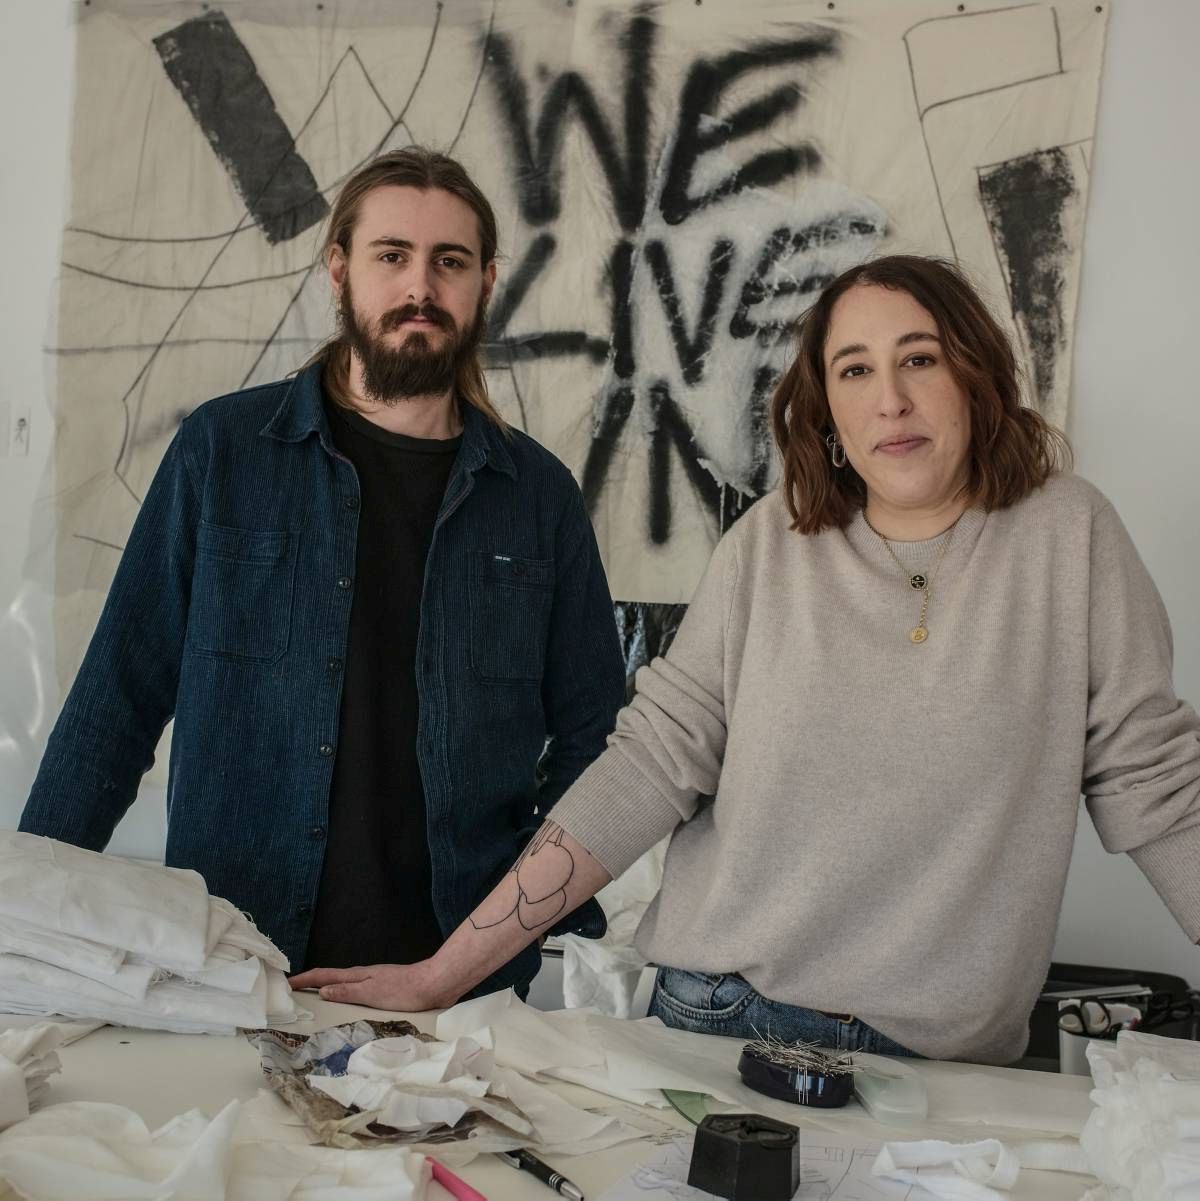 Elliott Brighton et Jeanne Guenat dans leur atelier aux Bois, où naissent les modèles de leur marque baptisée "Sottes".